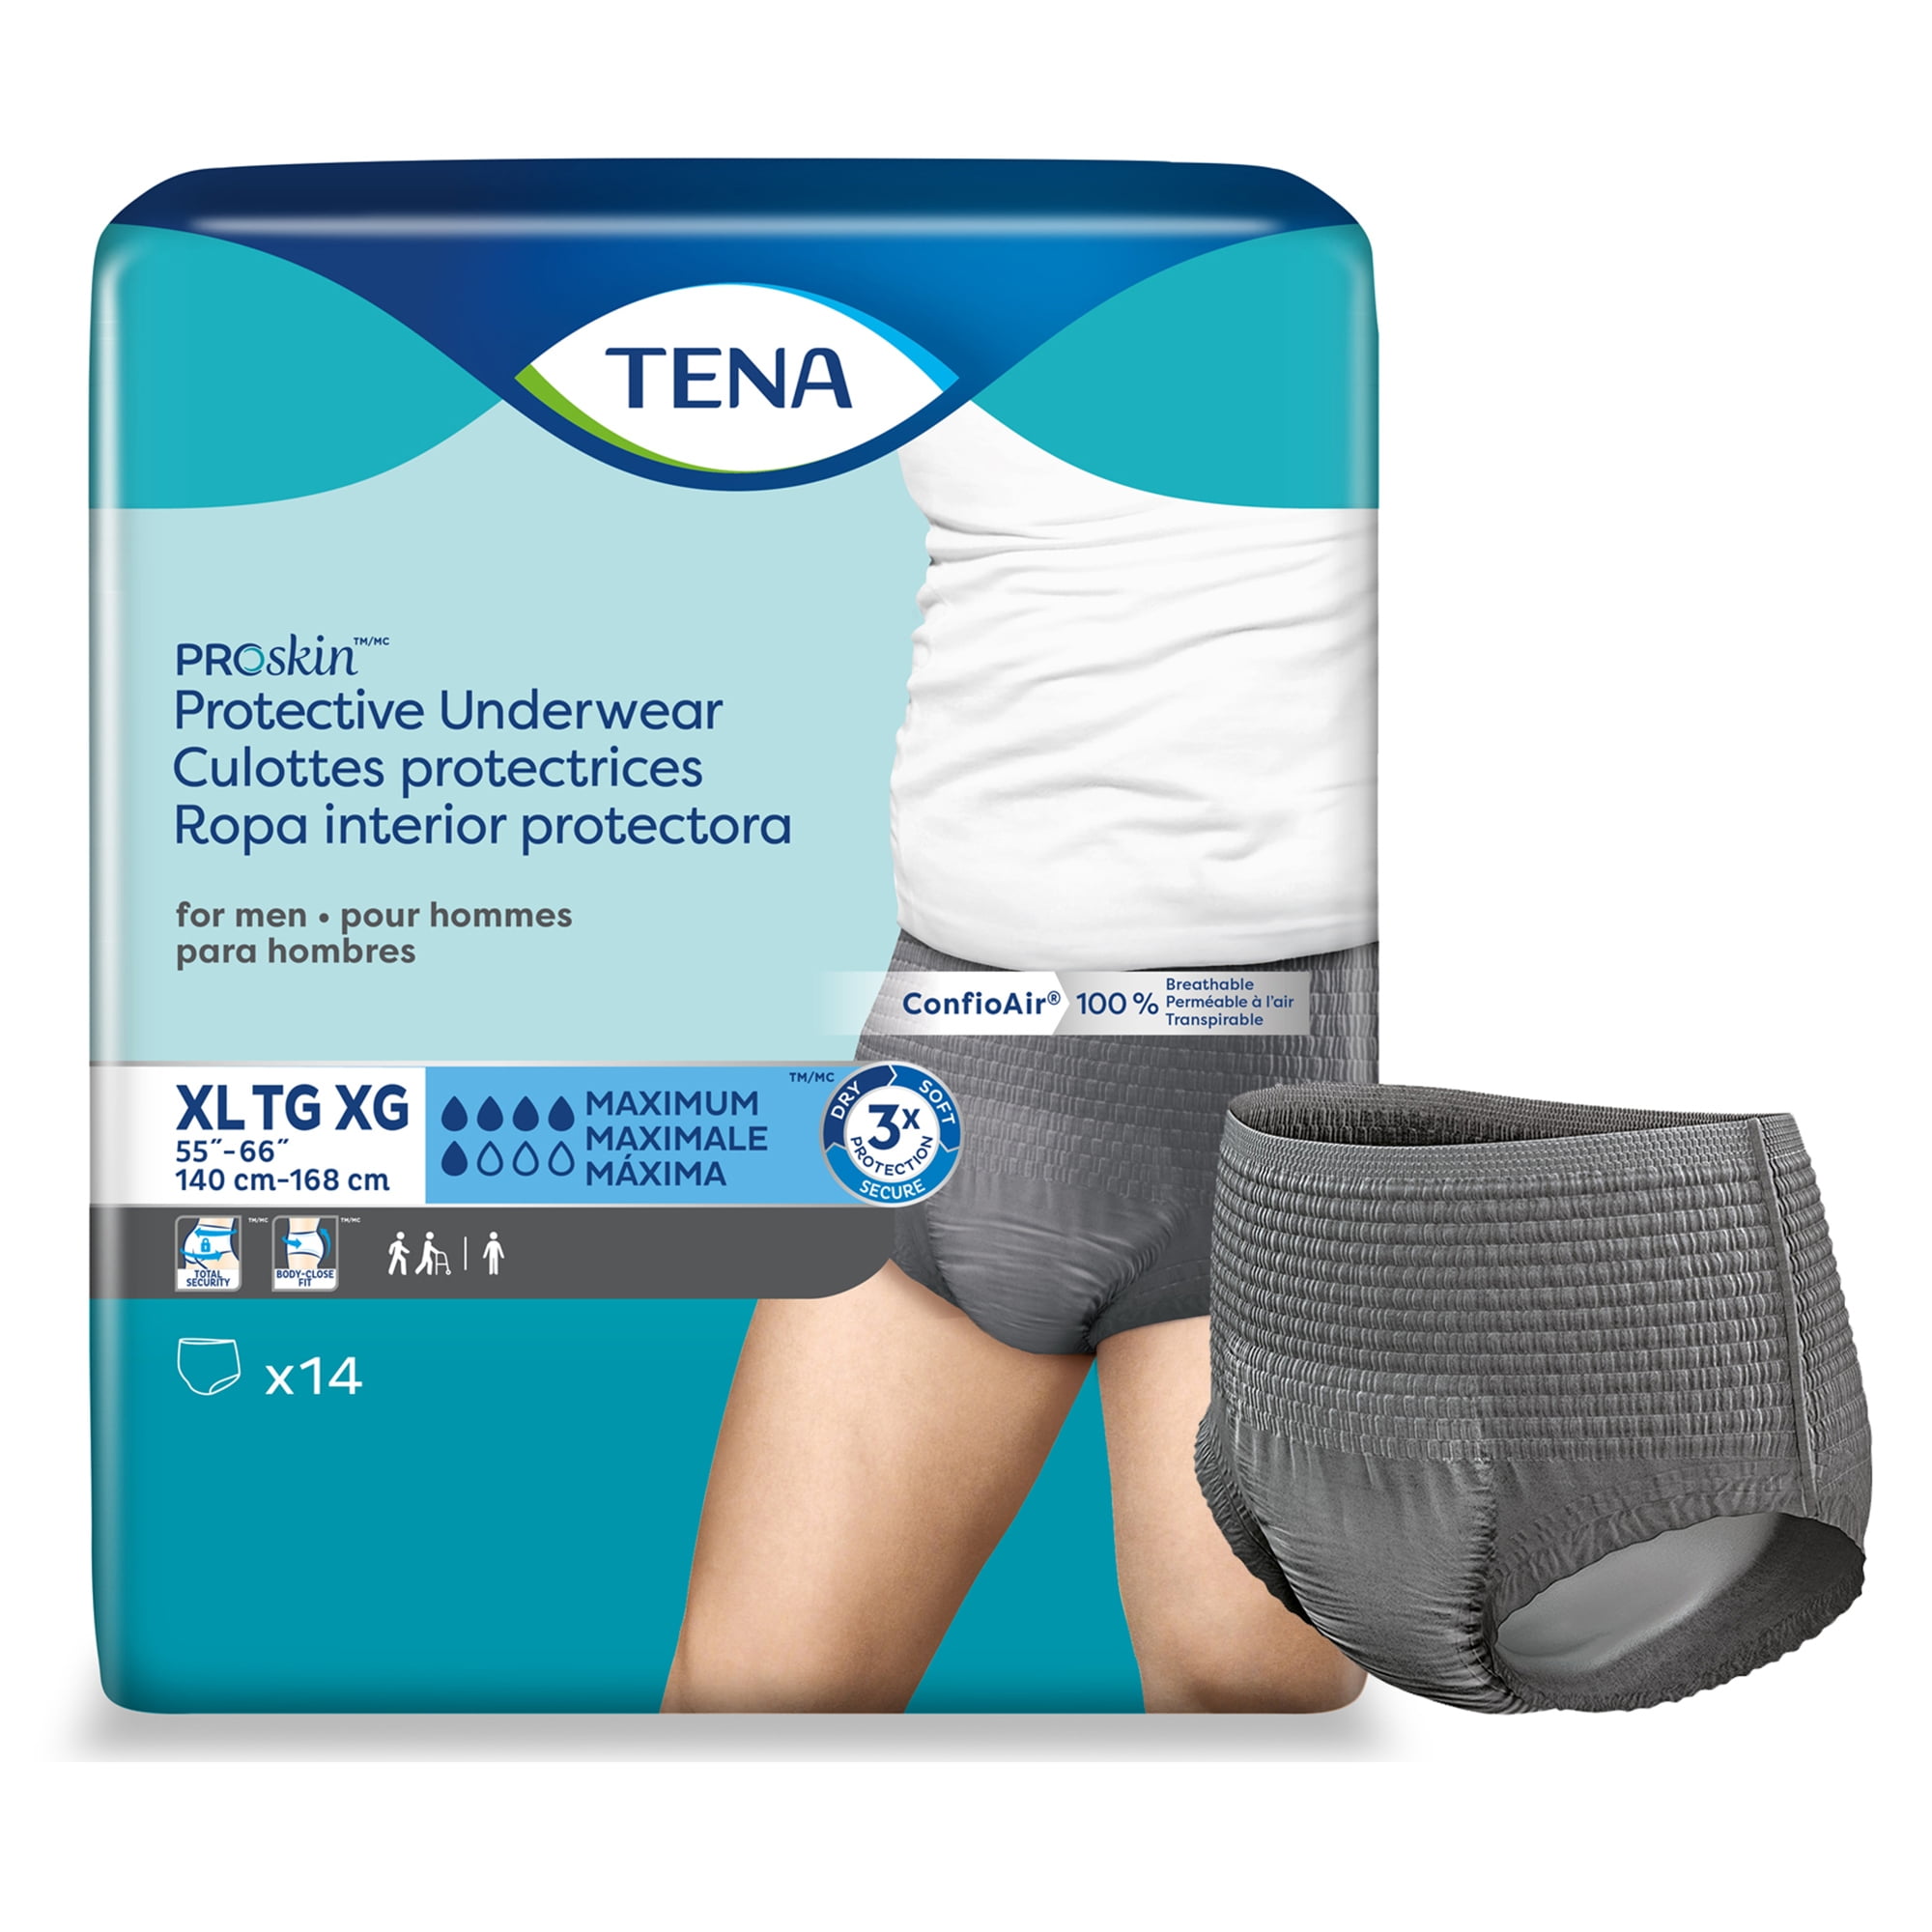 Disposable underwear designed for Women - Attends vs Prevail vs TENA  comparison –